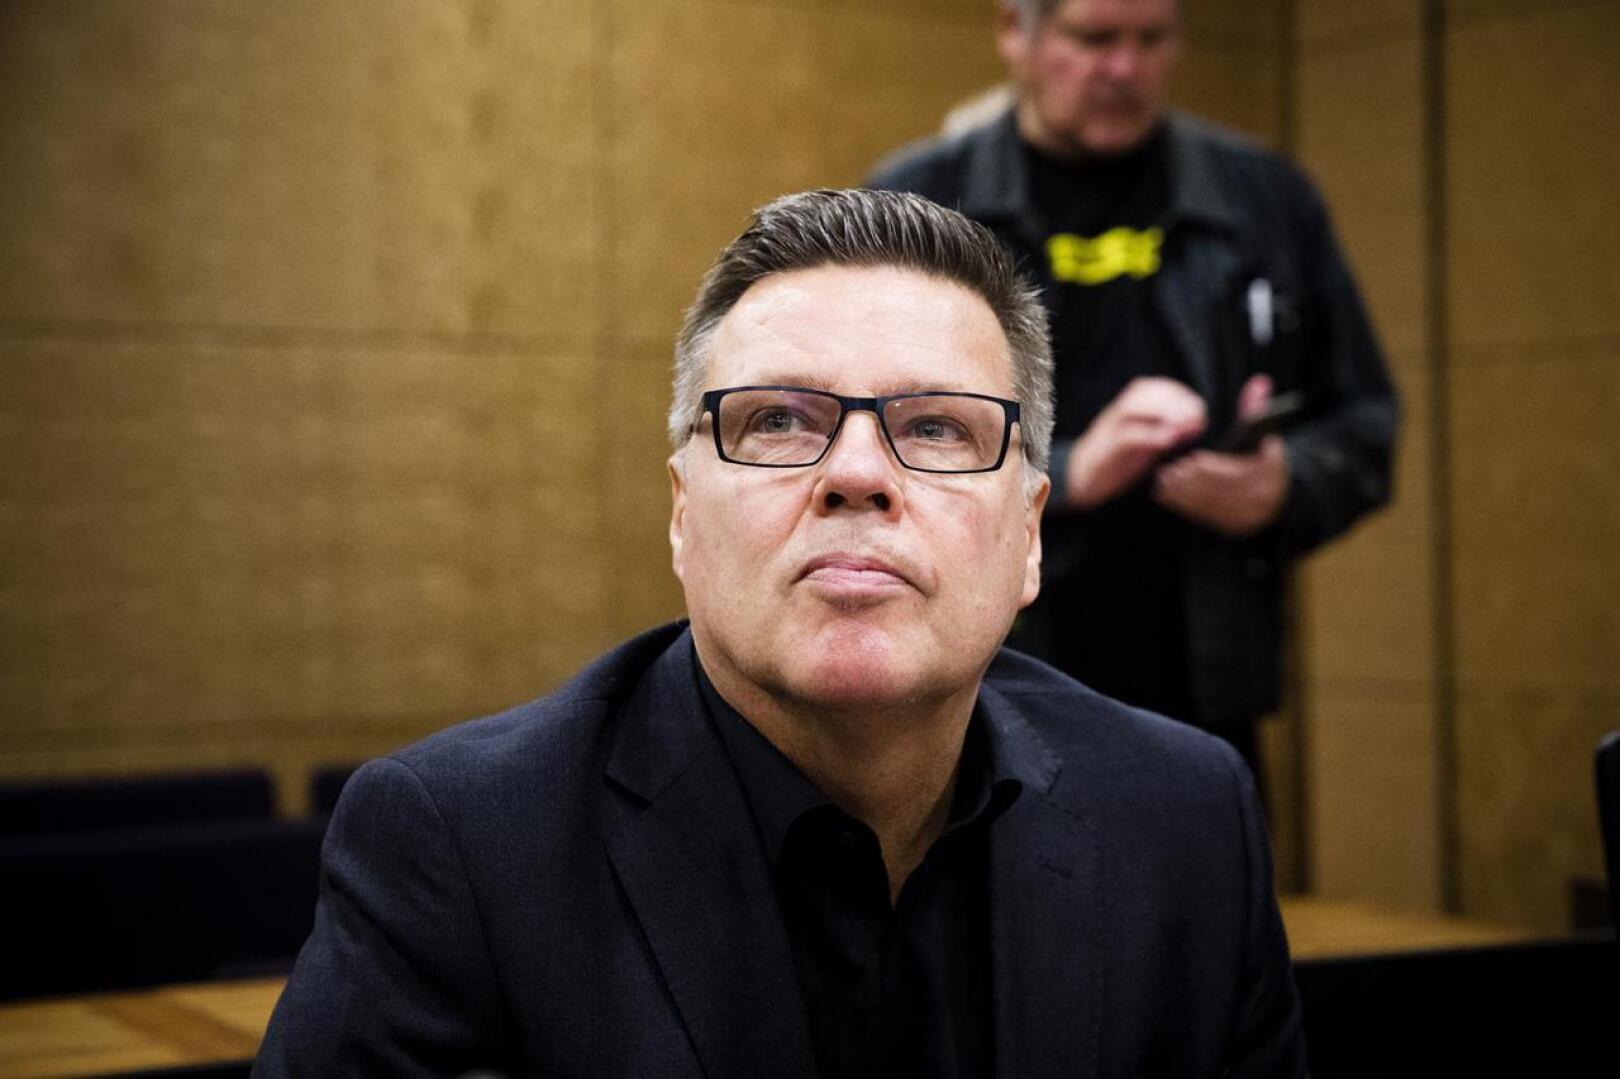 Helsingin huumepoliisin entiselle päällikölle Jari Aarniolle vaaditaan enintään neljän kuukauden ehdollista vankeutta tietolähteiden rekisteröinnin valvonnan laiminlyönnistä.